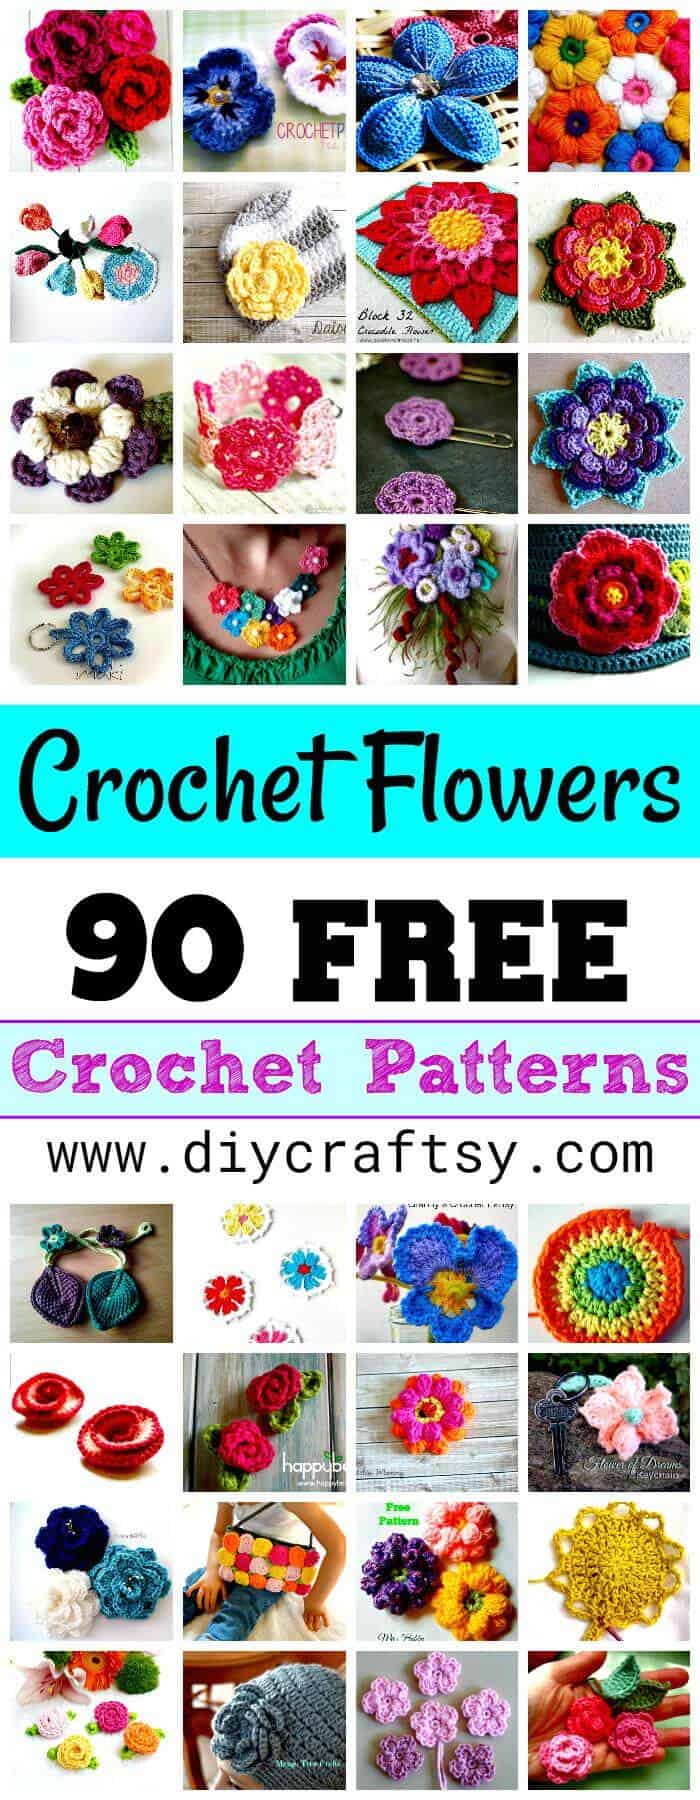 Crochet Flowers - 90+ FREE Crochet Flower Patterns - Crochet Flower Pattern, DIY Flowers y DIY Crafts